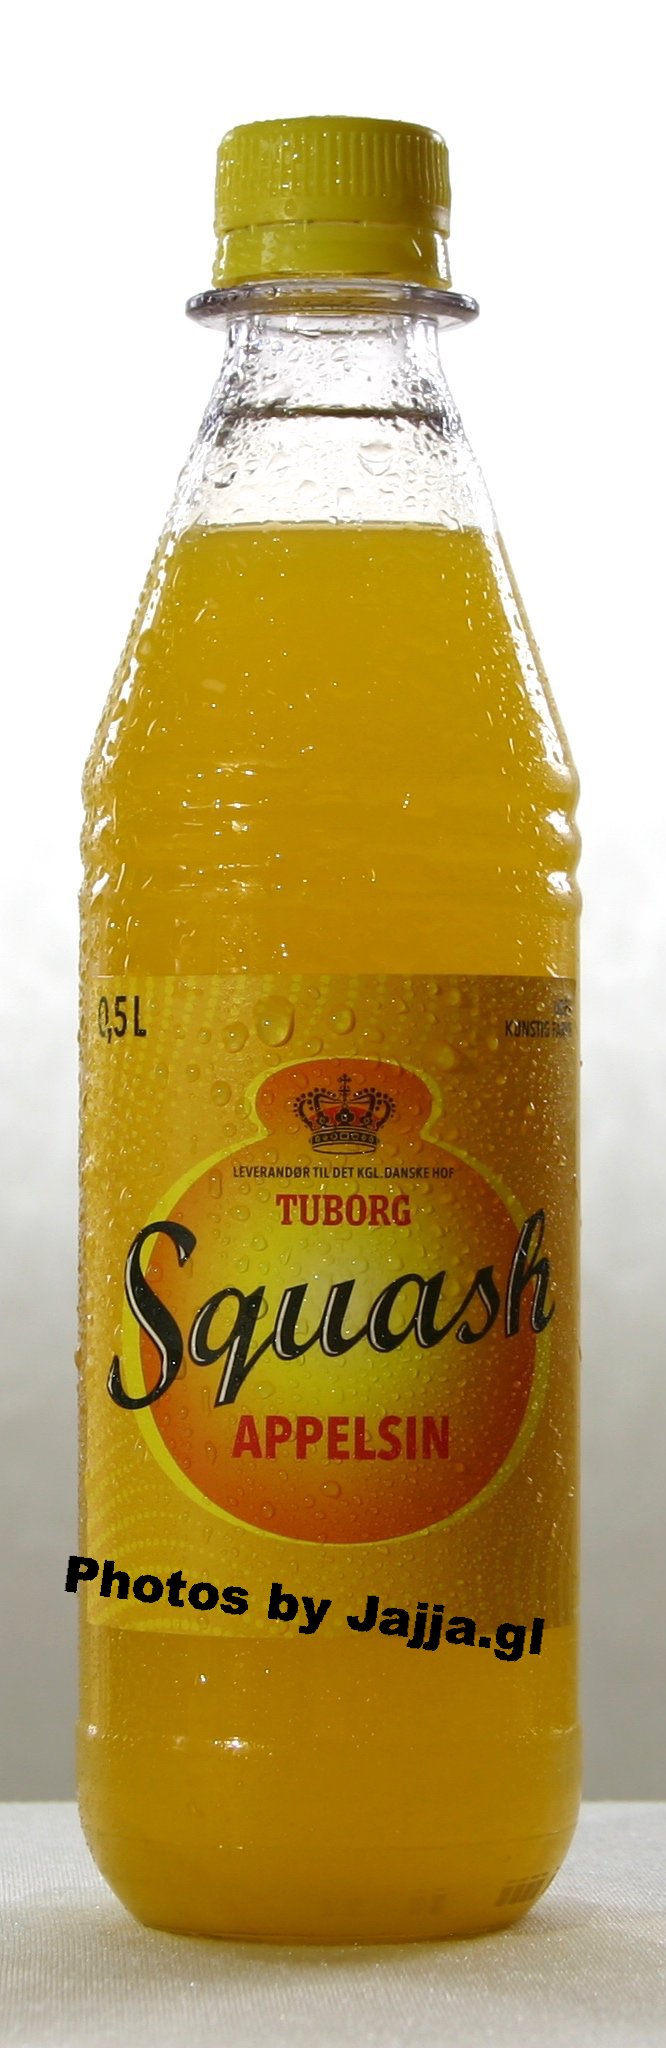 Squash - Tuborg, 50cl (inkl. pant)